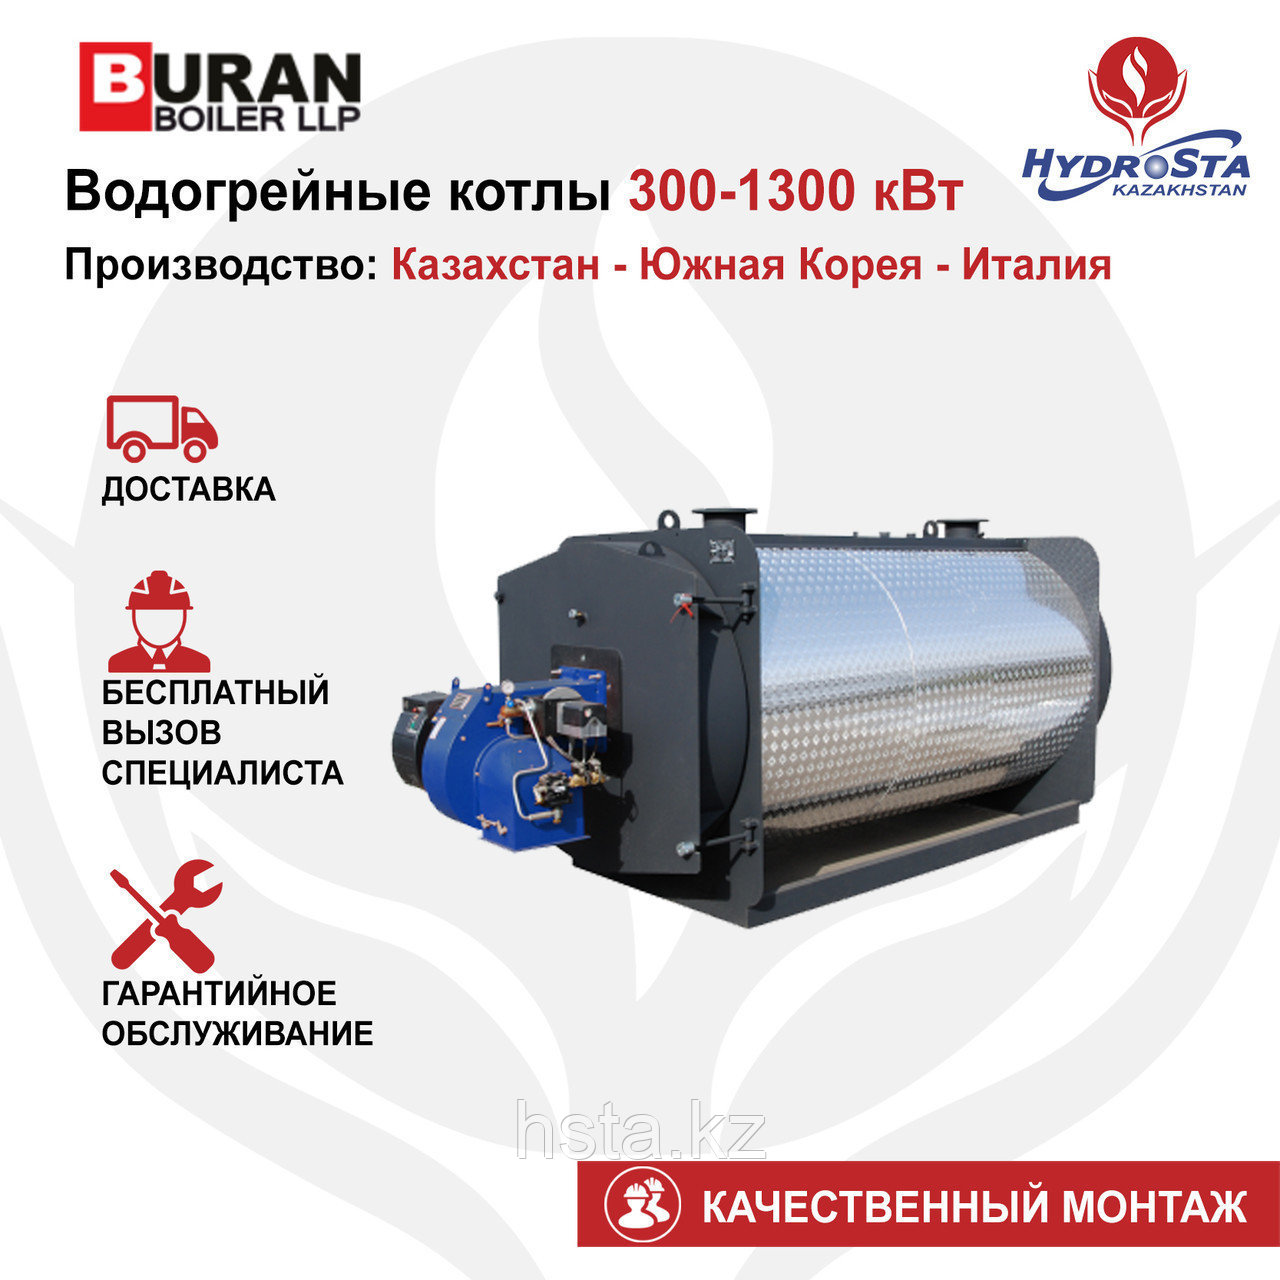 Котел одноконтурный Cronos BB-1200 (Buran Boiler) 1200кВт (цена без горелки)